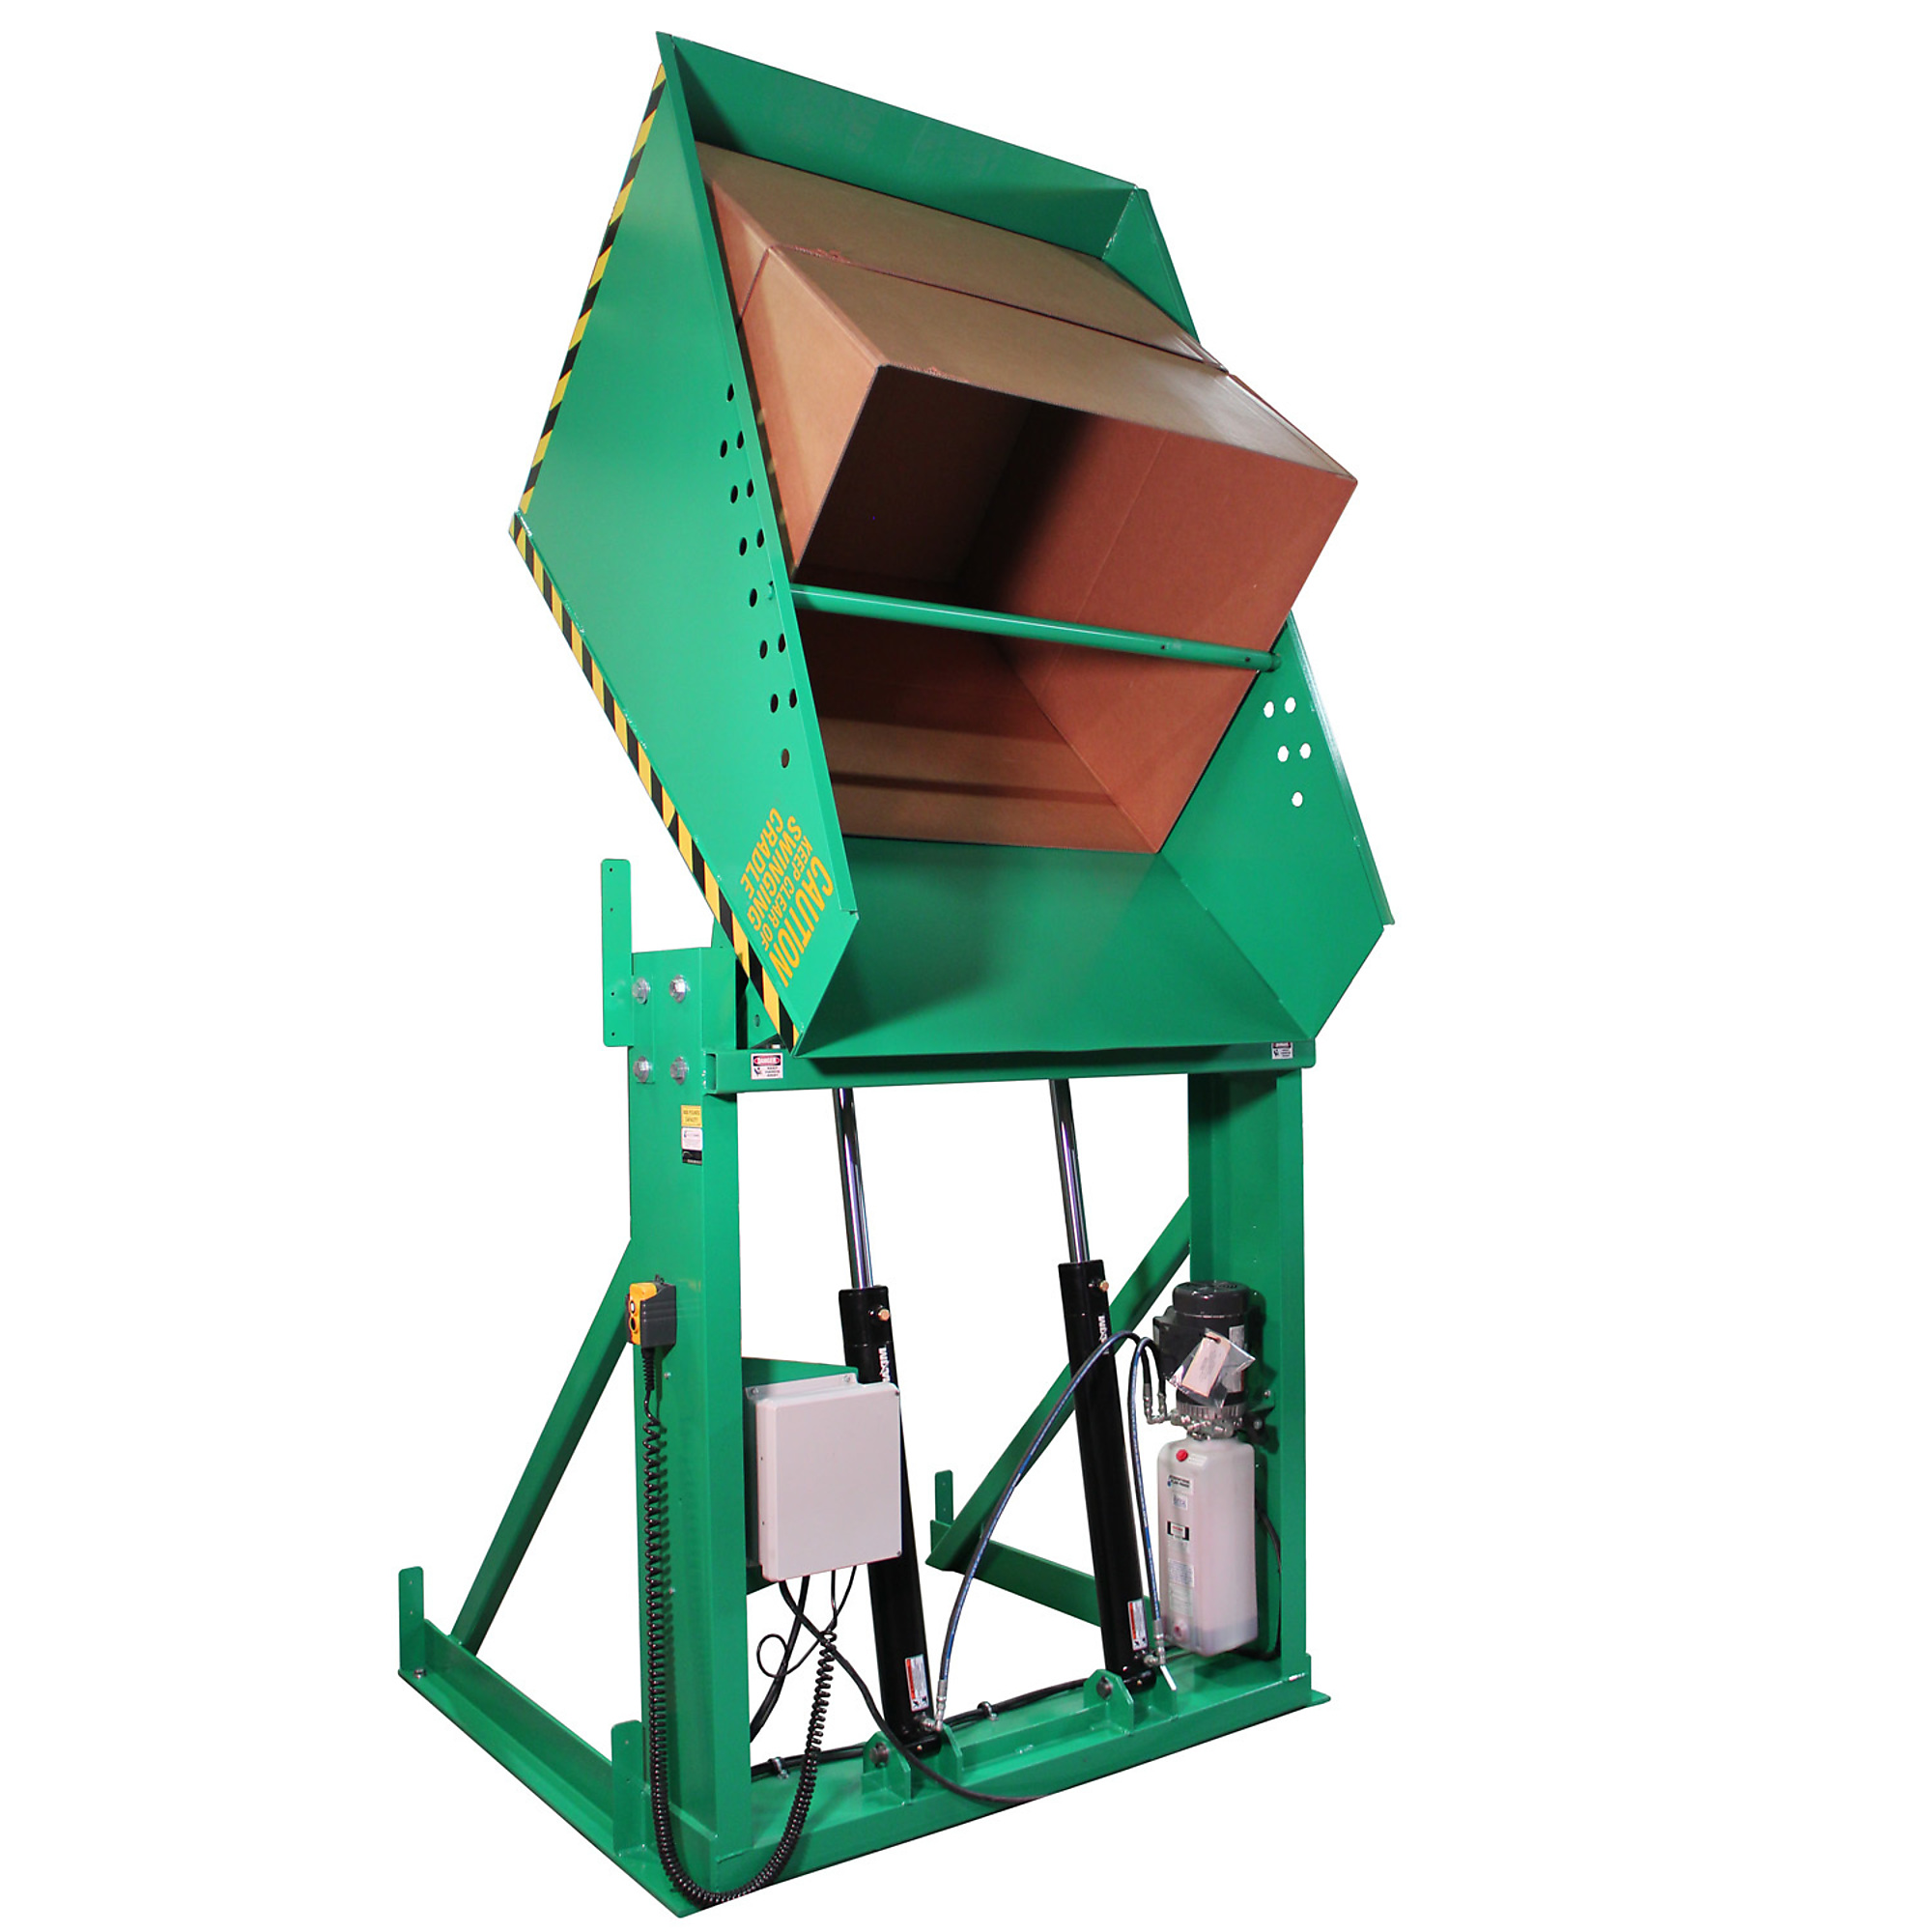 Valley Craft, Box Dumper, 51x48Inch Chute, Capacity 2000 lb, Color Green, Model F80184A4